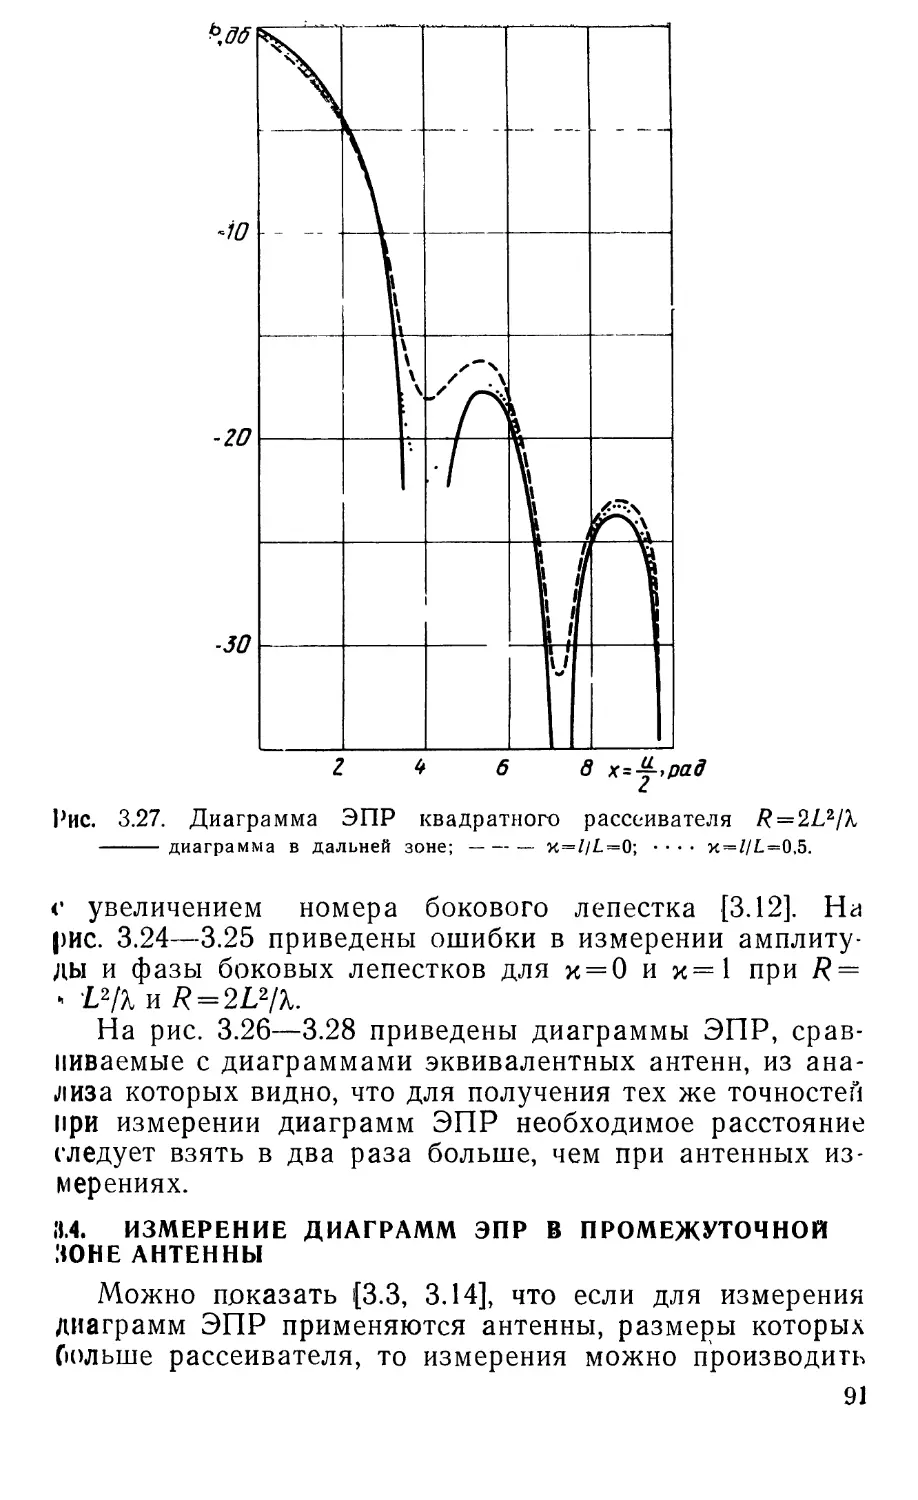 3.4. Измерение диаграмм ЭПР в промежуточной зоне антенны